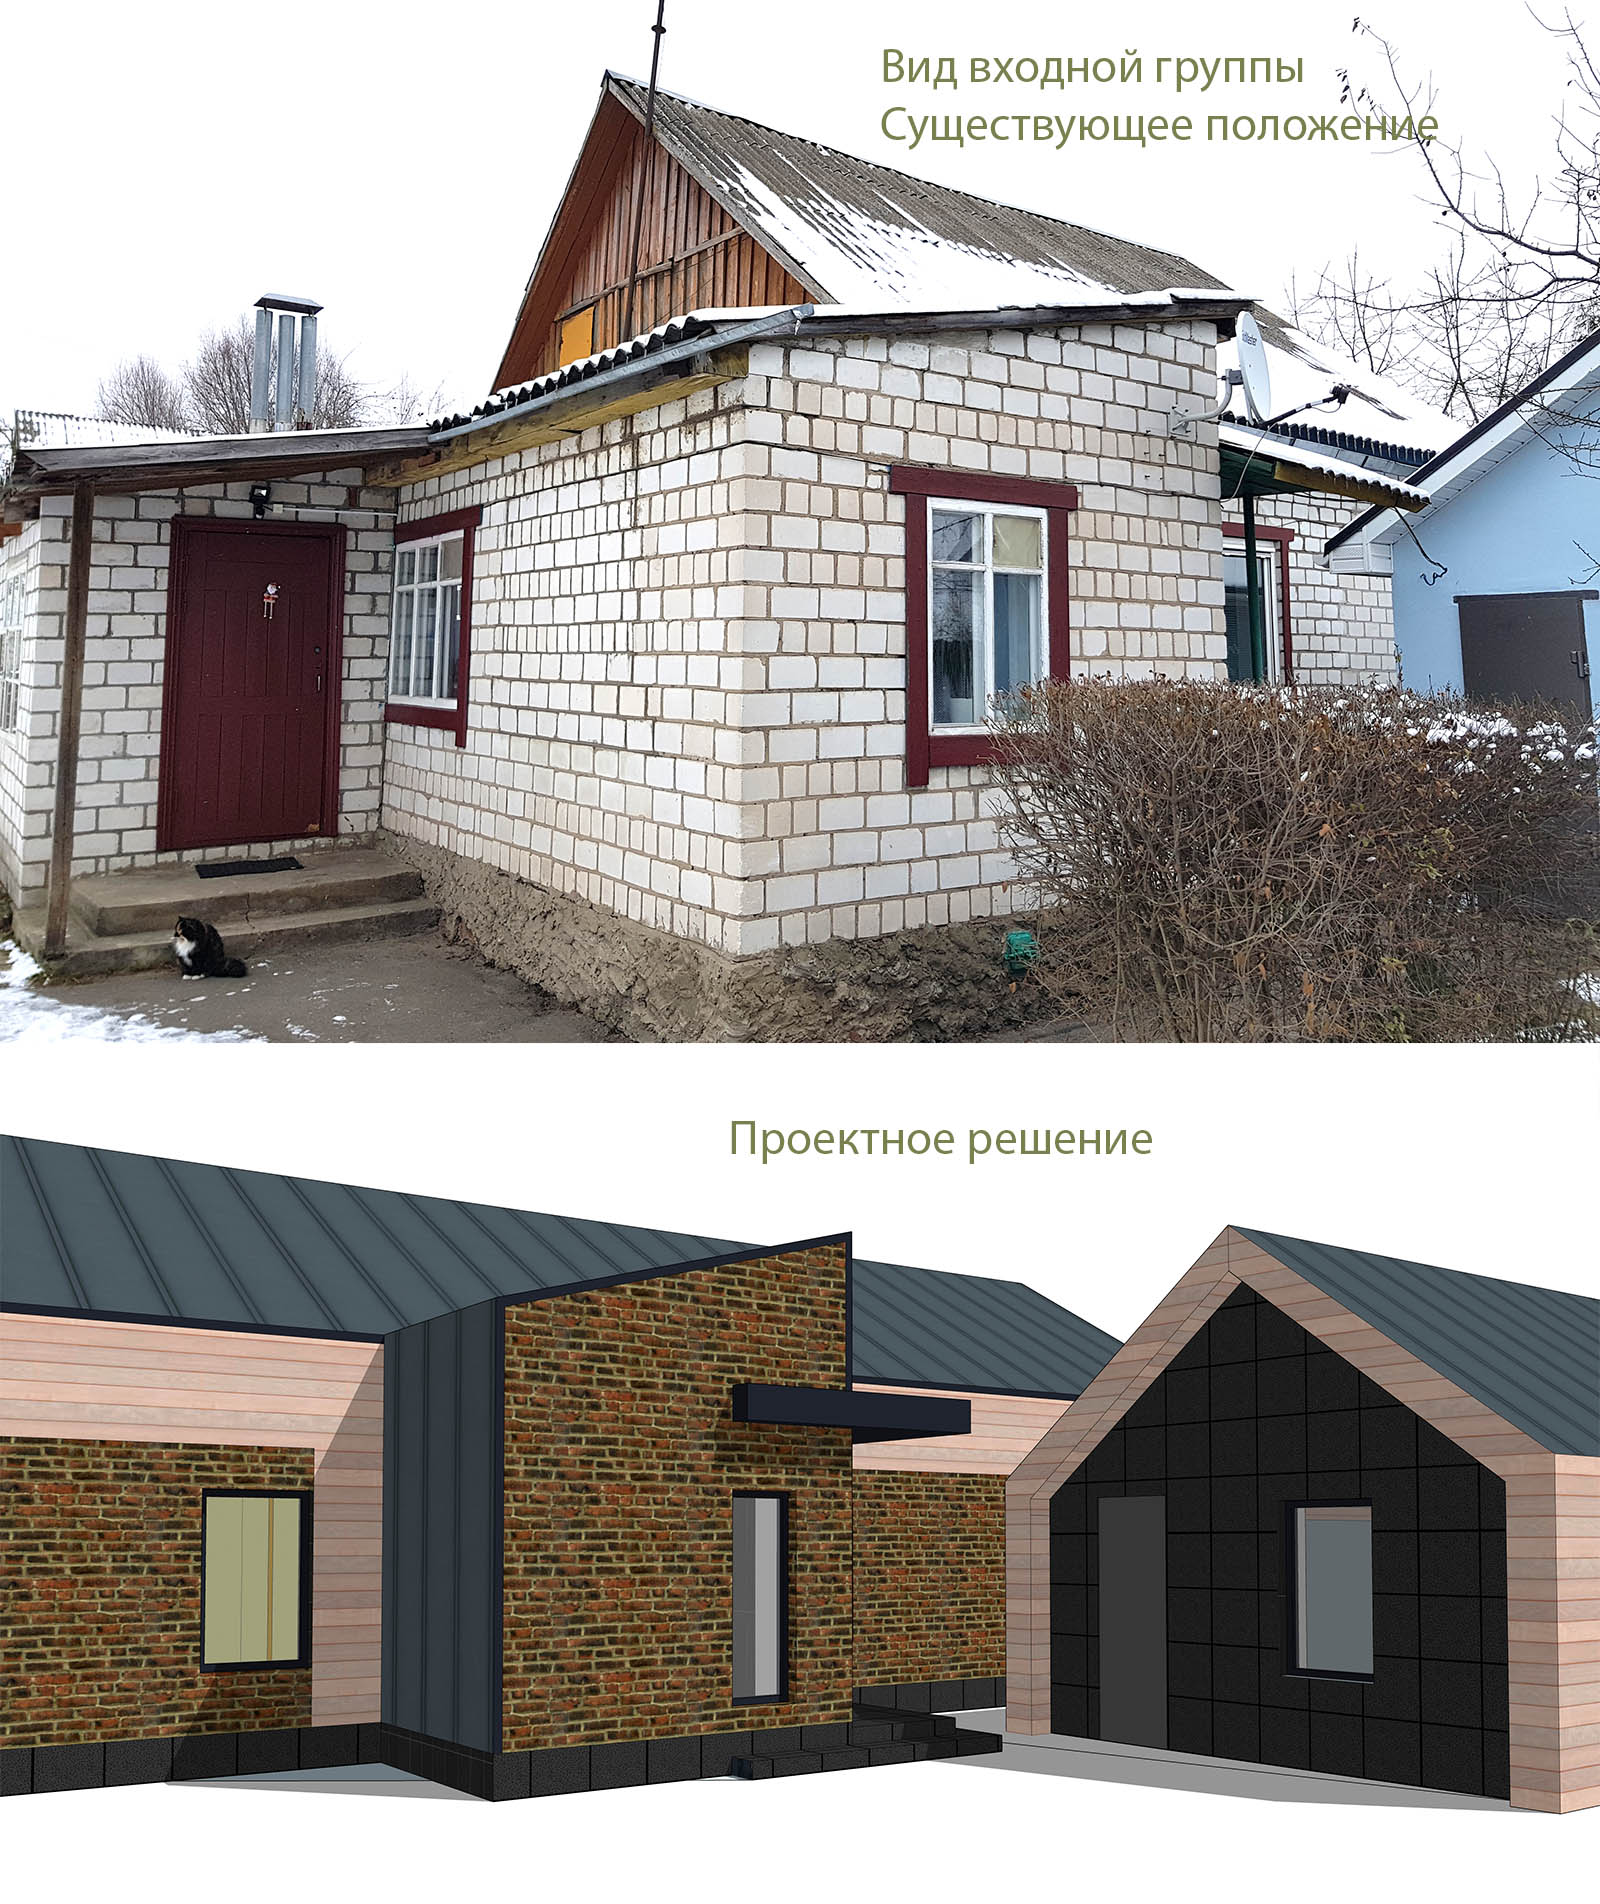 реконструкция дома модернизация 857 деревенского дома